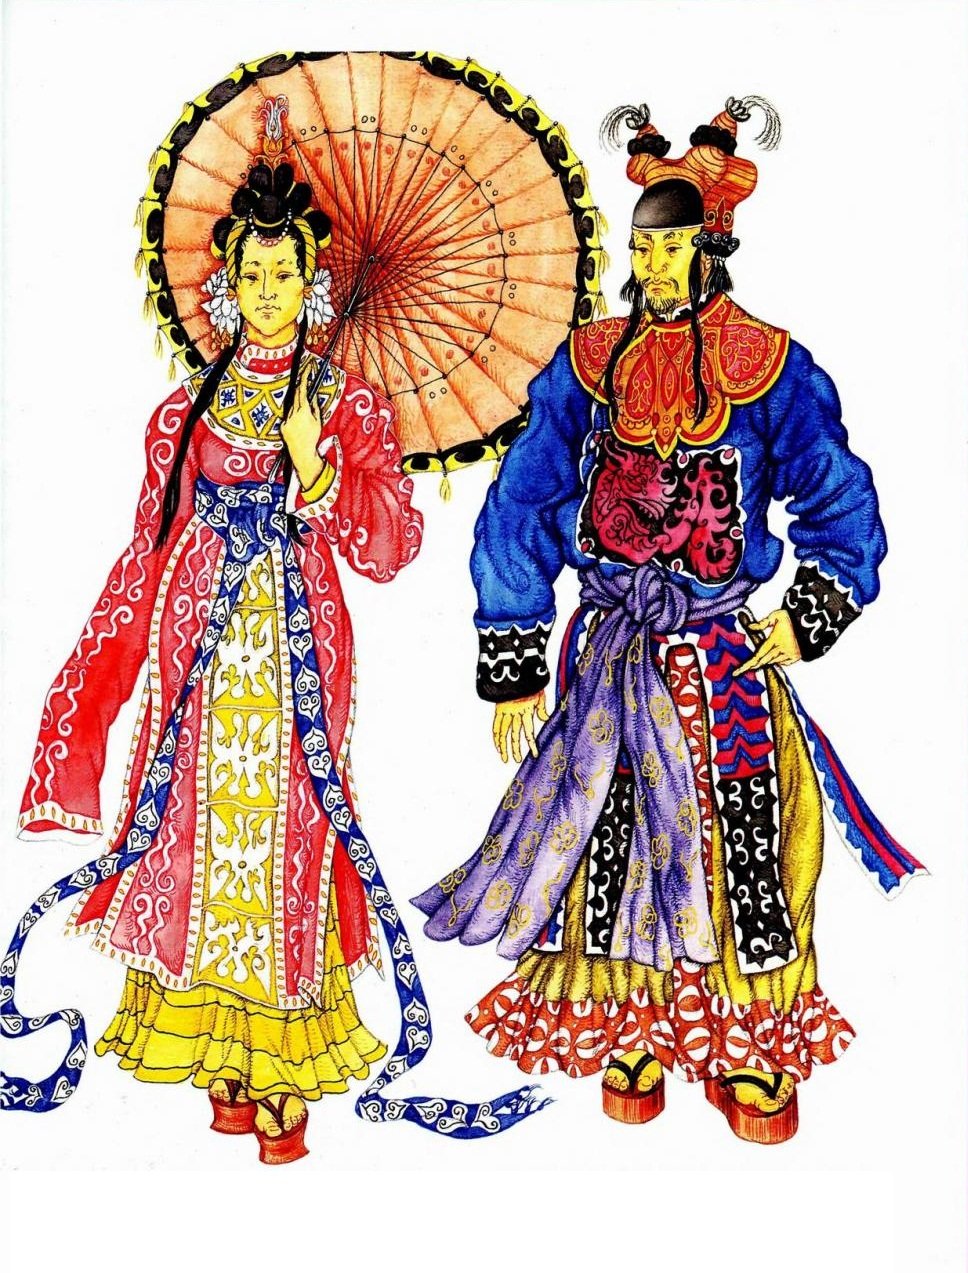 Китайские народные игры. Традиционная древняя китайская одежда. Национальный костюм древнего Китая. Женский костюм древнего Китая. Китайская одежда древнего Китая.